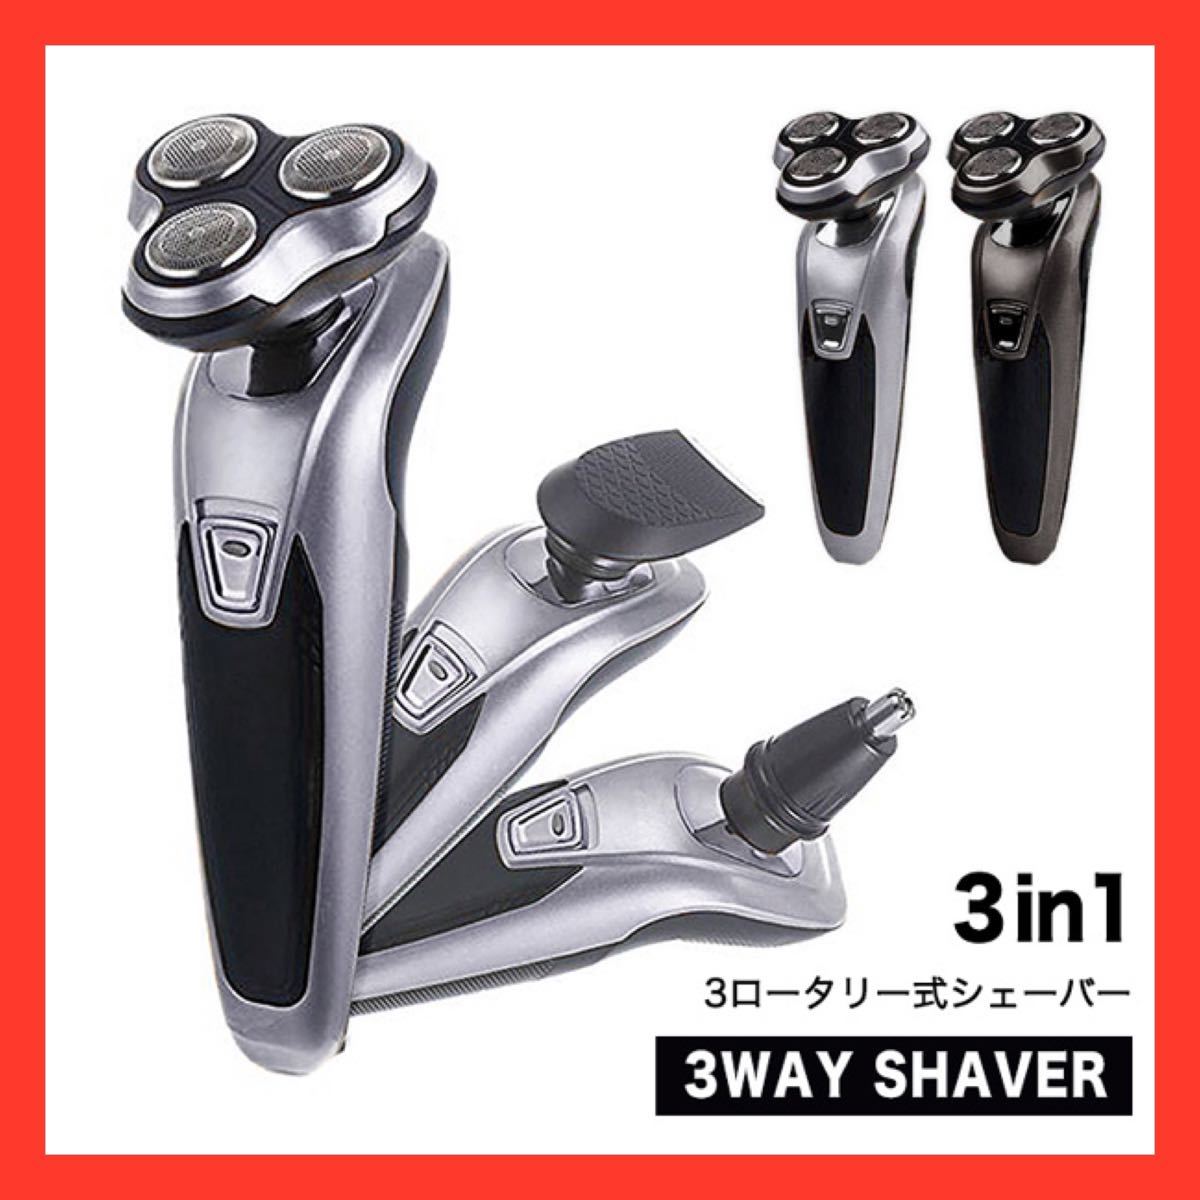 シェーバー 電動シェーバー 髭剃り 3wayシェーバー 3ロータリー式 6枚刃 水洗い可能 効率的 スピーディー ヘッド交換可能